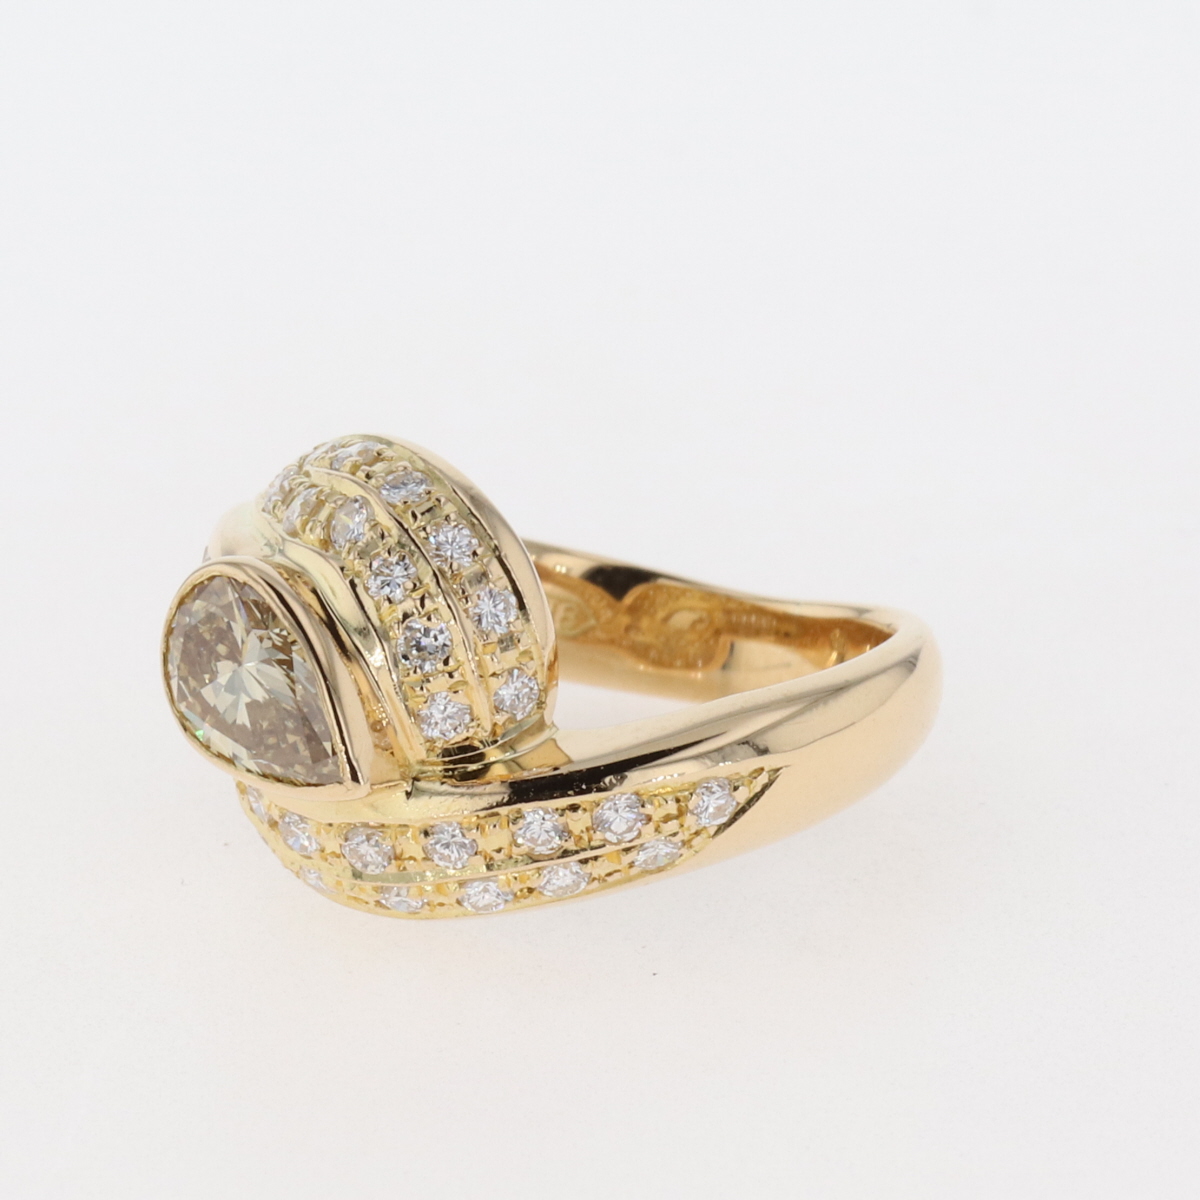 ランク ダイヤモンド デザインリング K18 イエローゴールド 指輪 メレダイヤ リング 約5.5号 YG ダイヤモンド レディース ：バイセル 店 しがござい